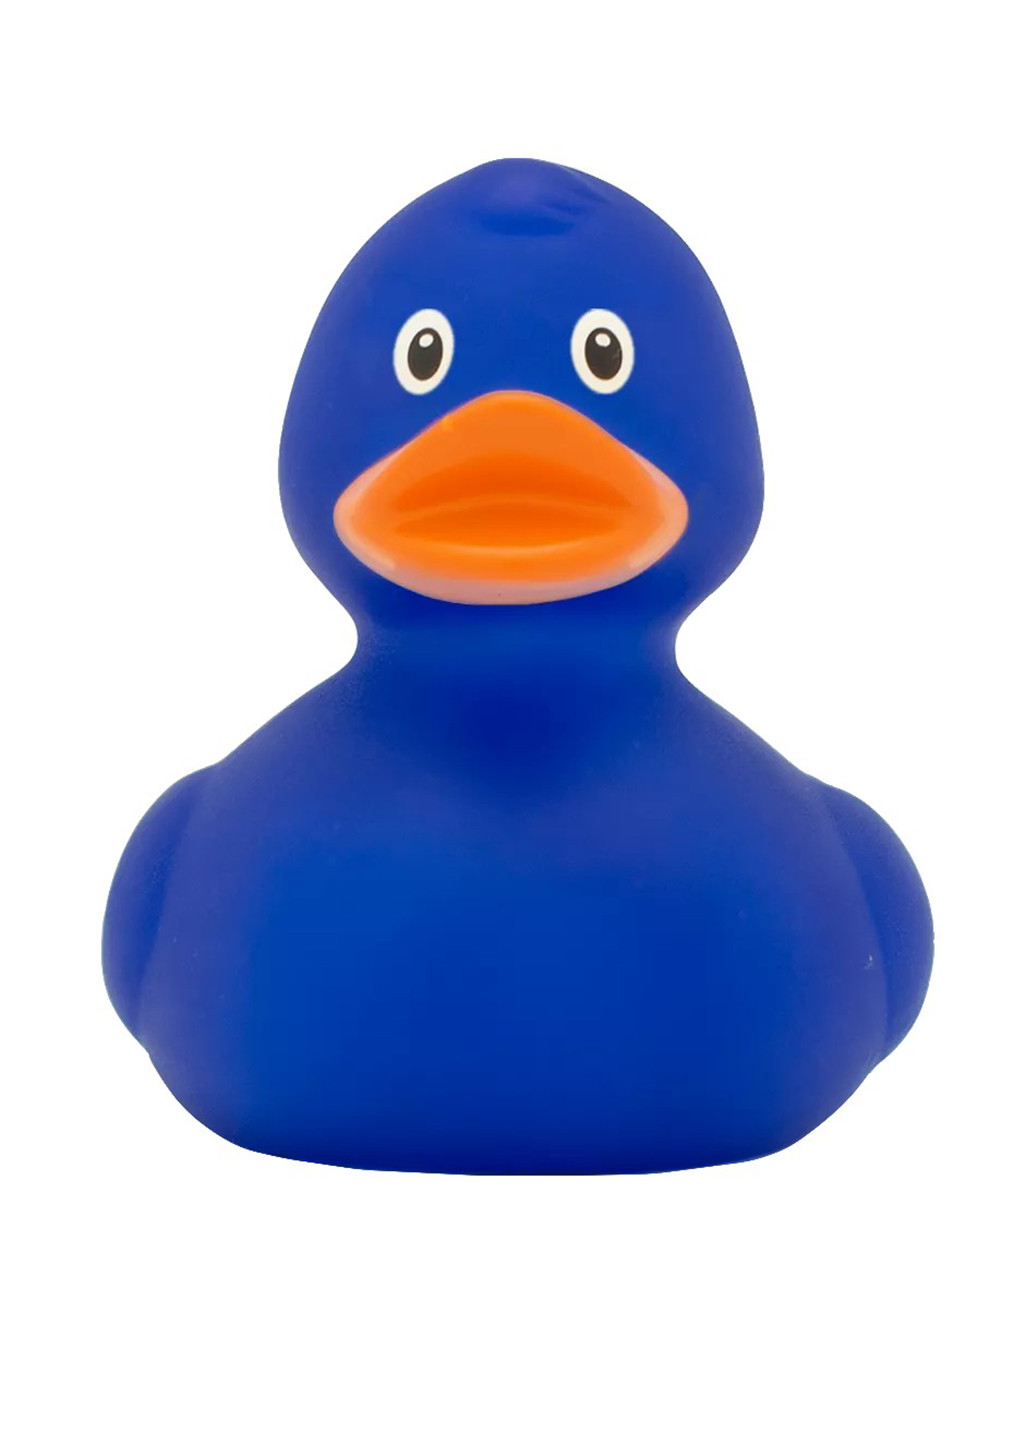 Іграшка для купання Качка Синя, 8,5x8,5x7,5 см Funny Ducks (250618825)